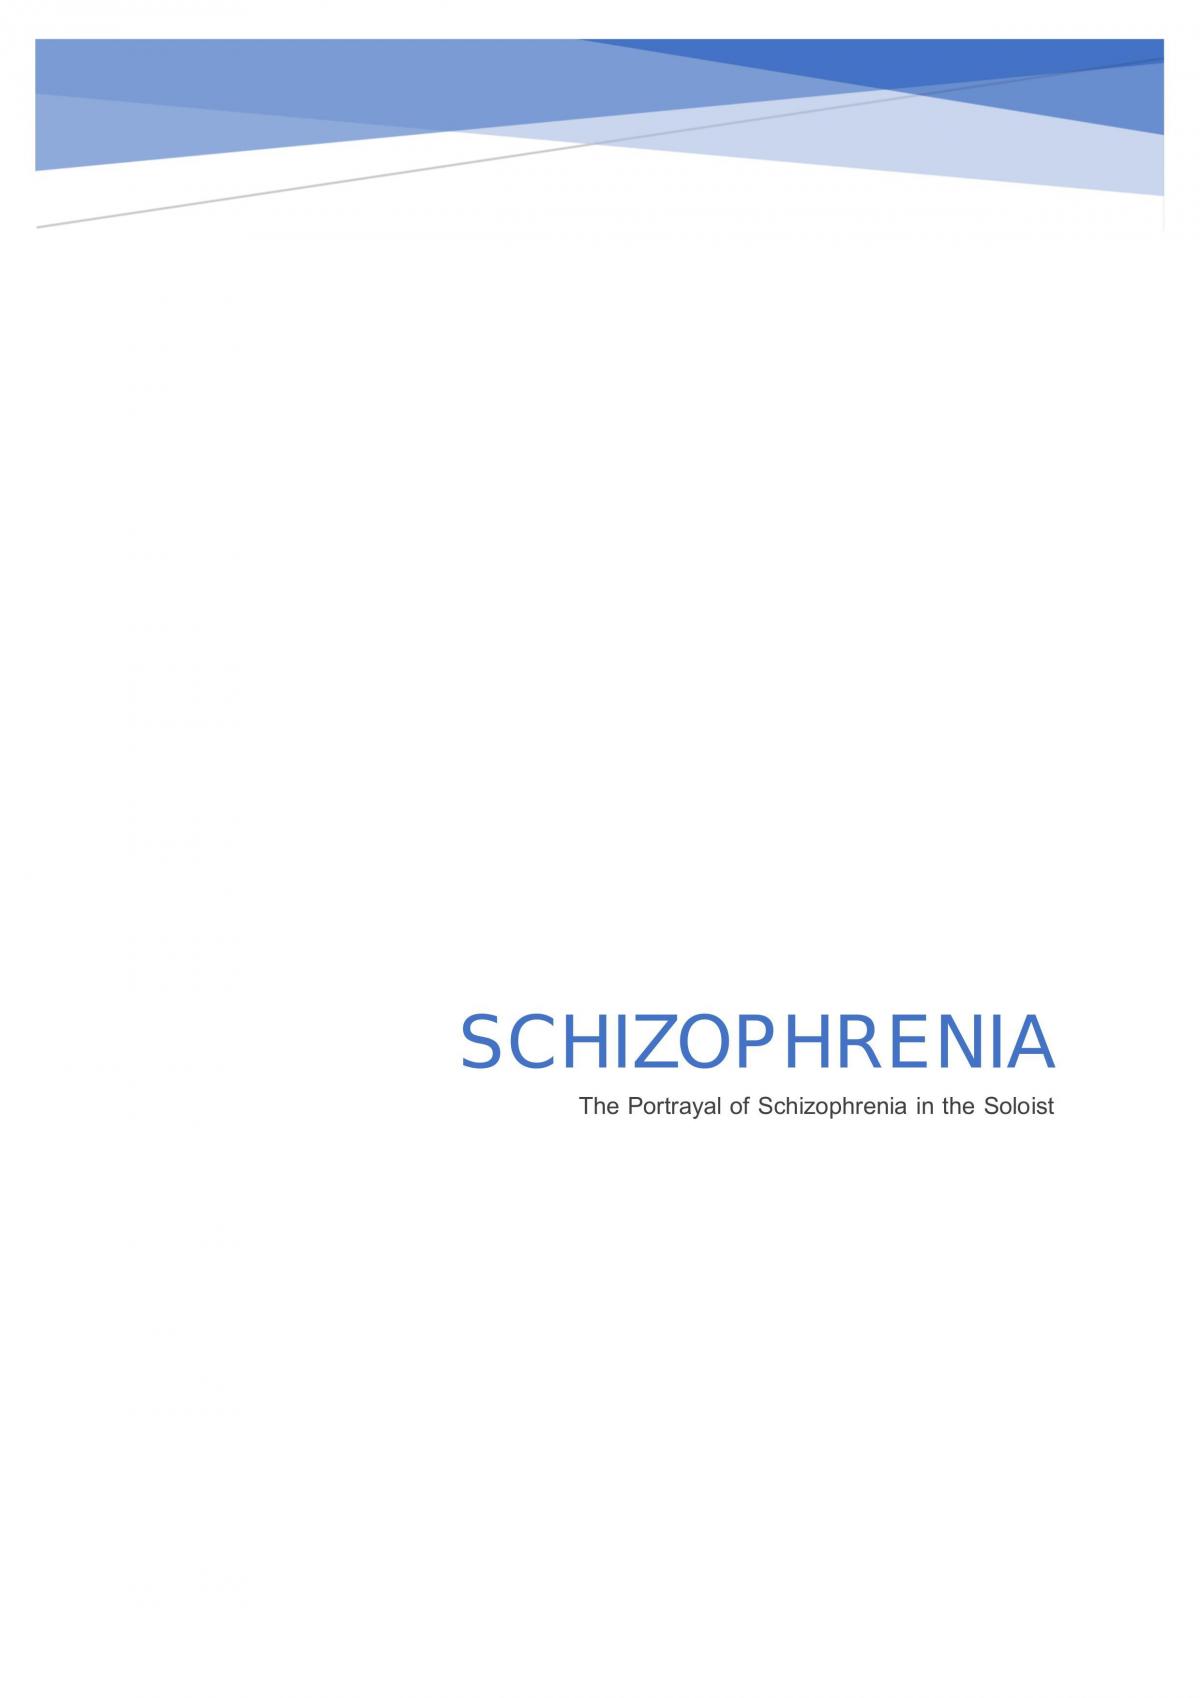 schizophrenia essay questions